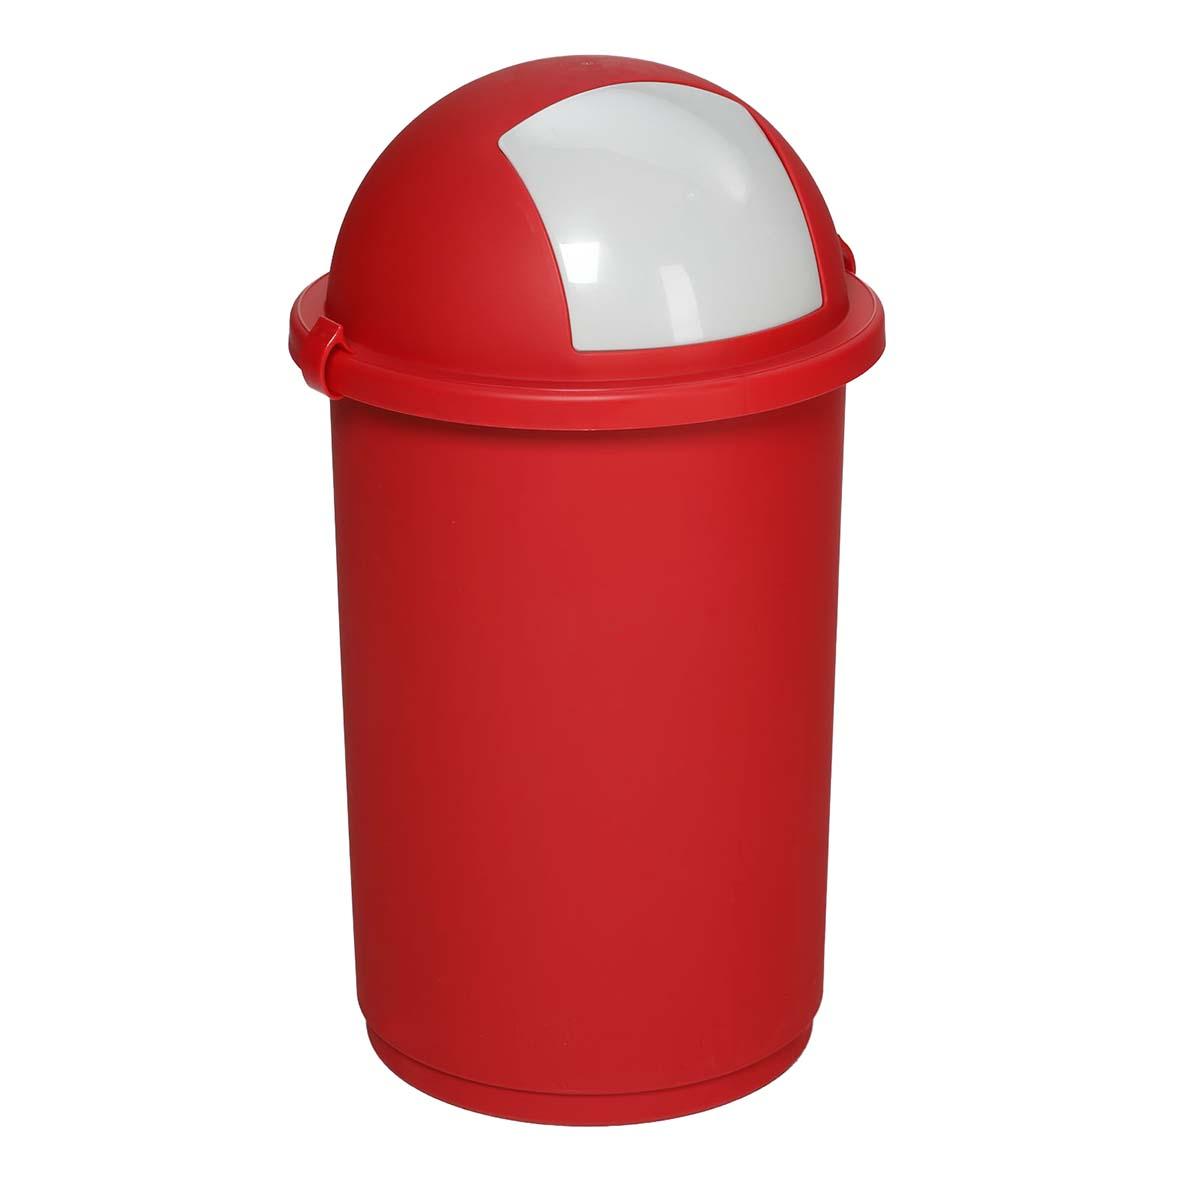 Abfallbehälter aus Kunststoff, Volumen 50 l, flüssigkeitsdicht, mit Einwurfklappe